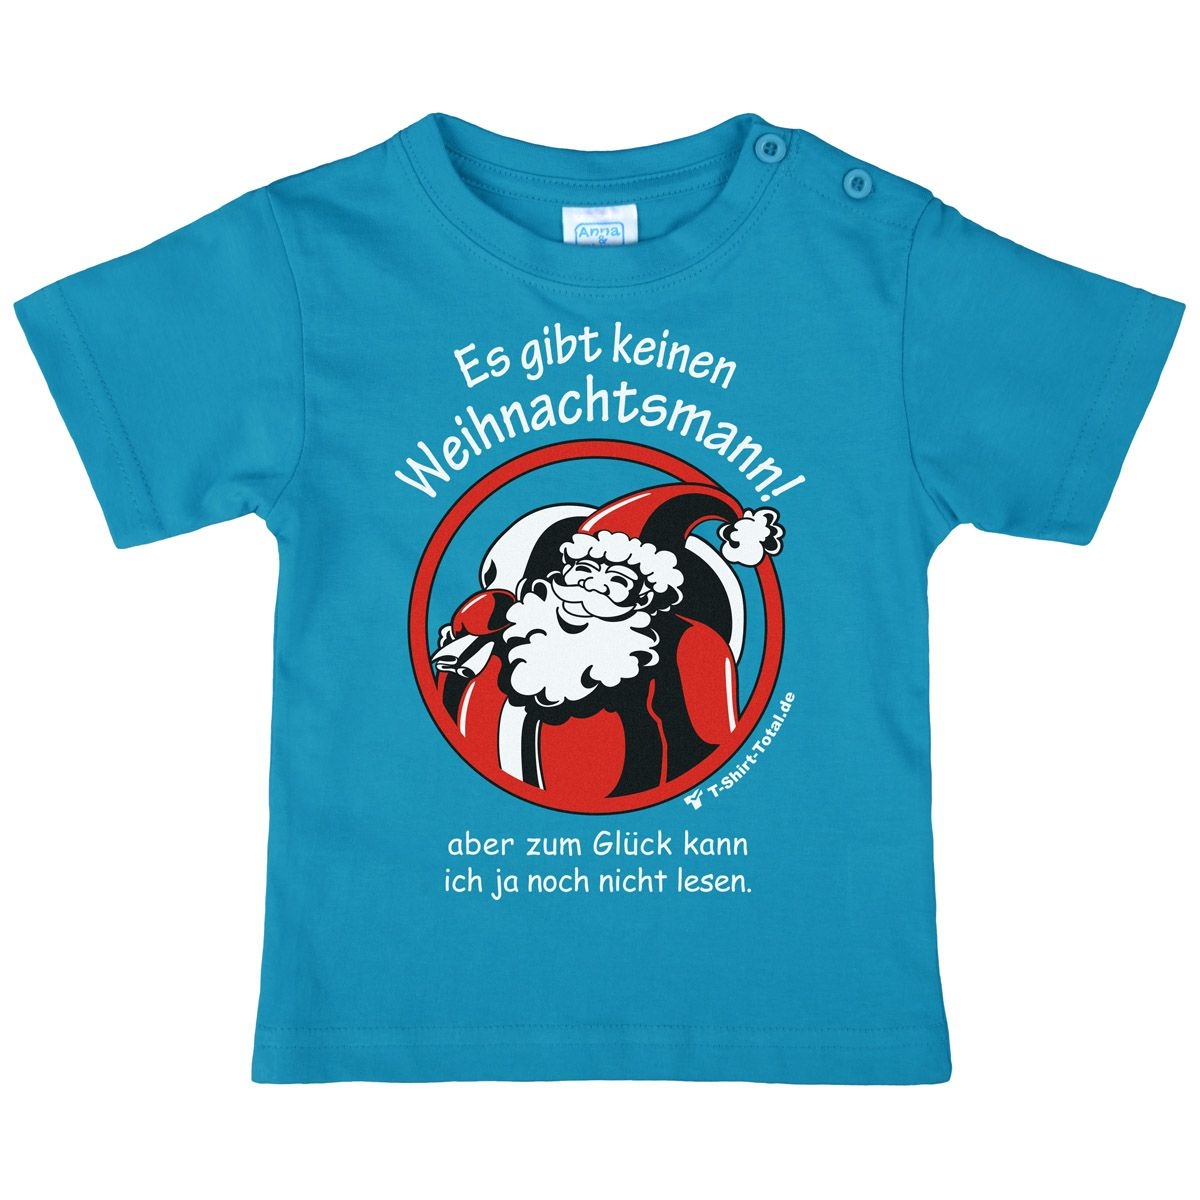 Gibt keinen Weihnachtsmann Kinder T-Shirt türkis 80 / 86